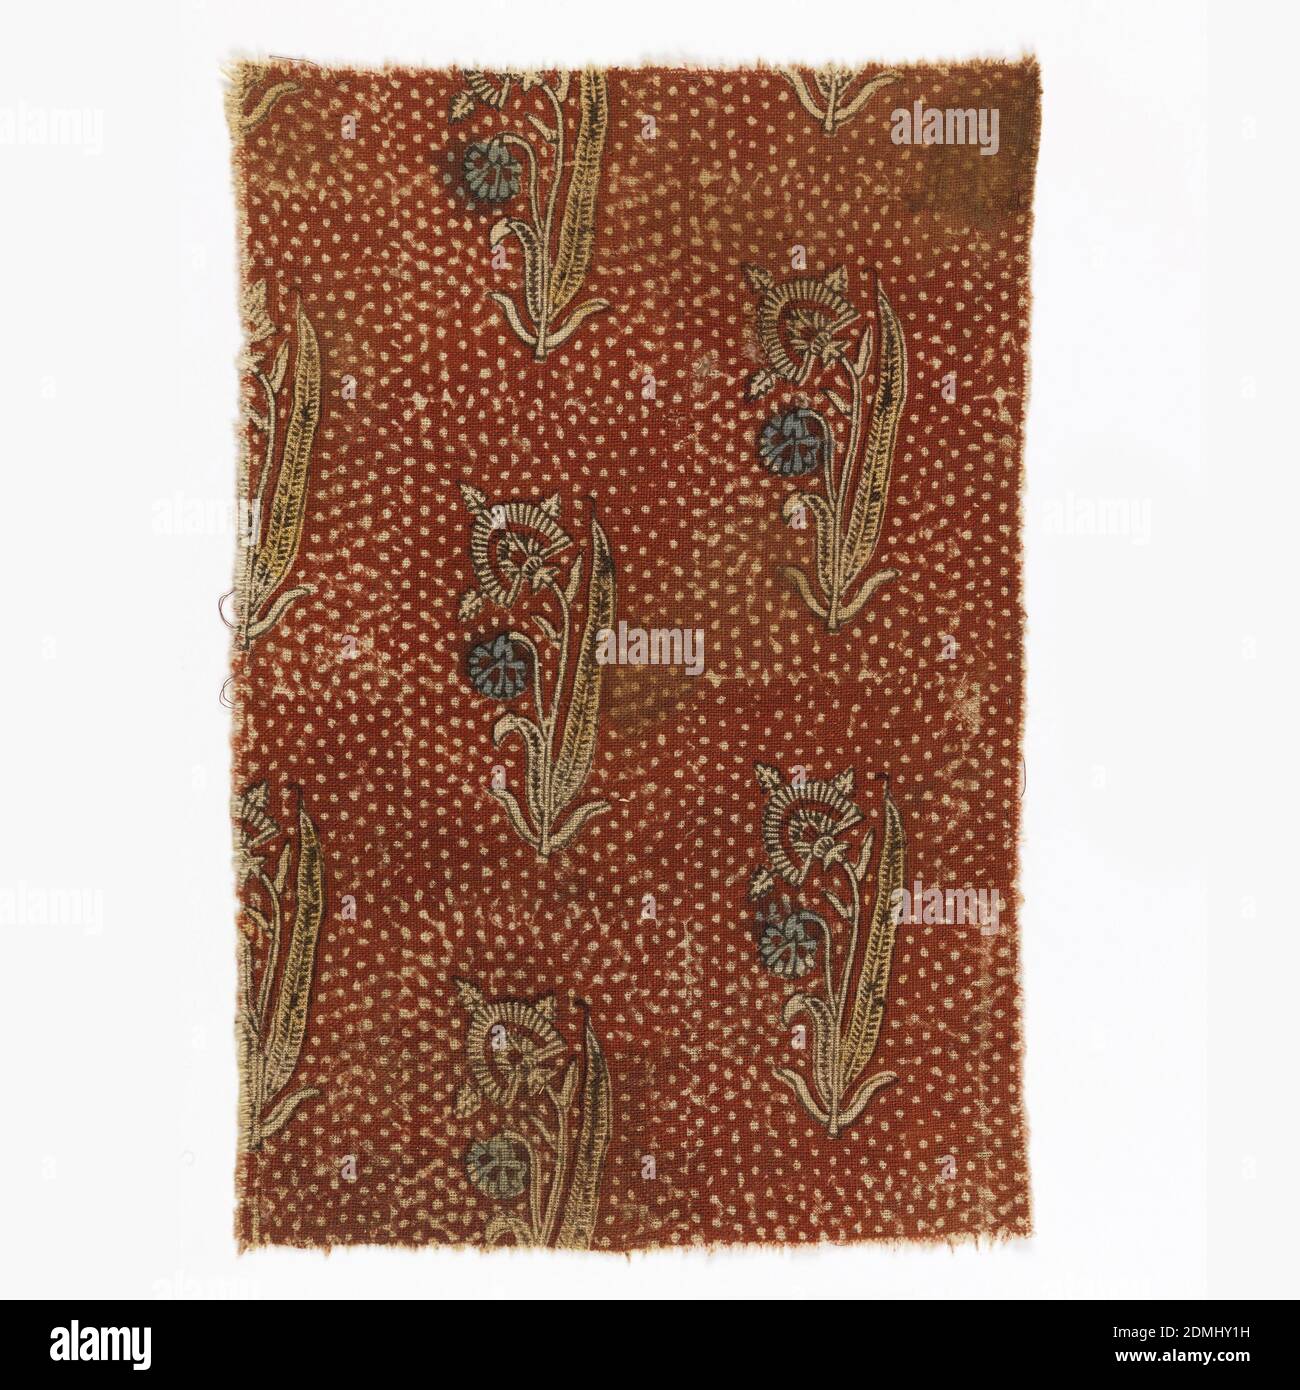 Fragment, Moyen : coton technique : tissage simple ; bloc imprimé à l'aide  de mordants et de teinture par immersion, plantes de type coquelicot  disposées en rangées décalées sur un fond rouge